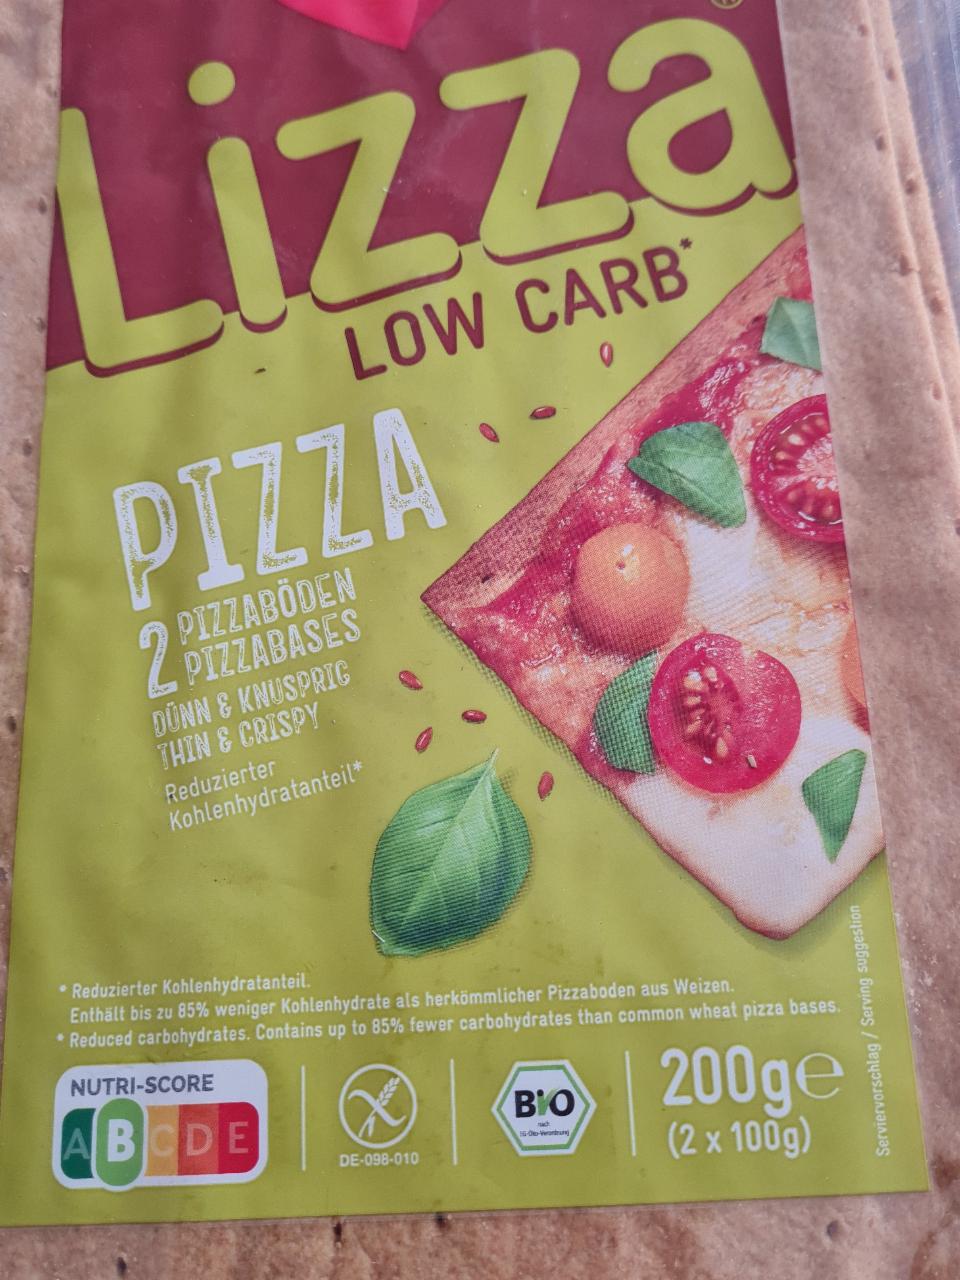 Fotografie - low carb pizza Lizza